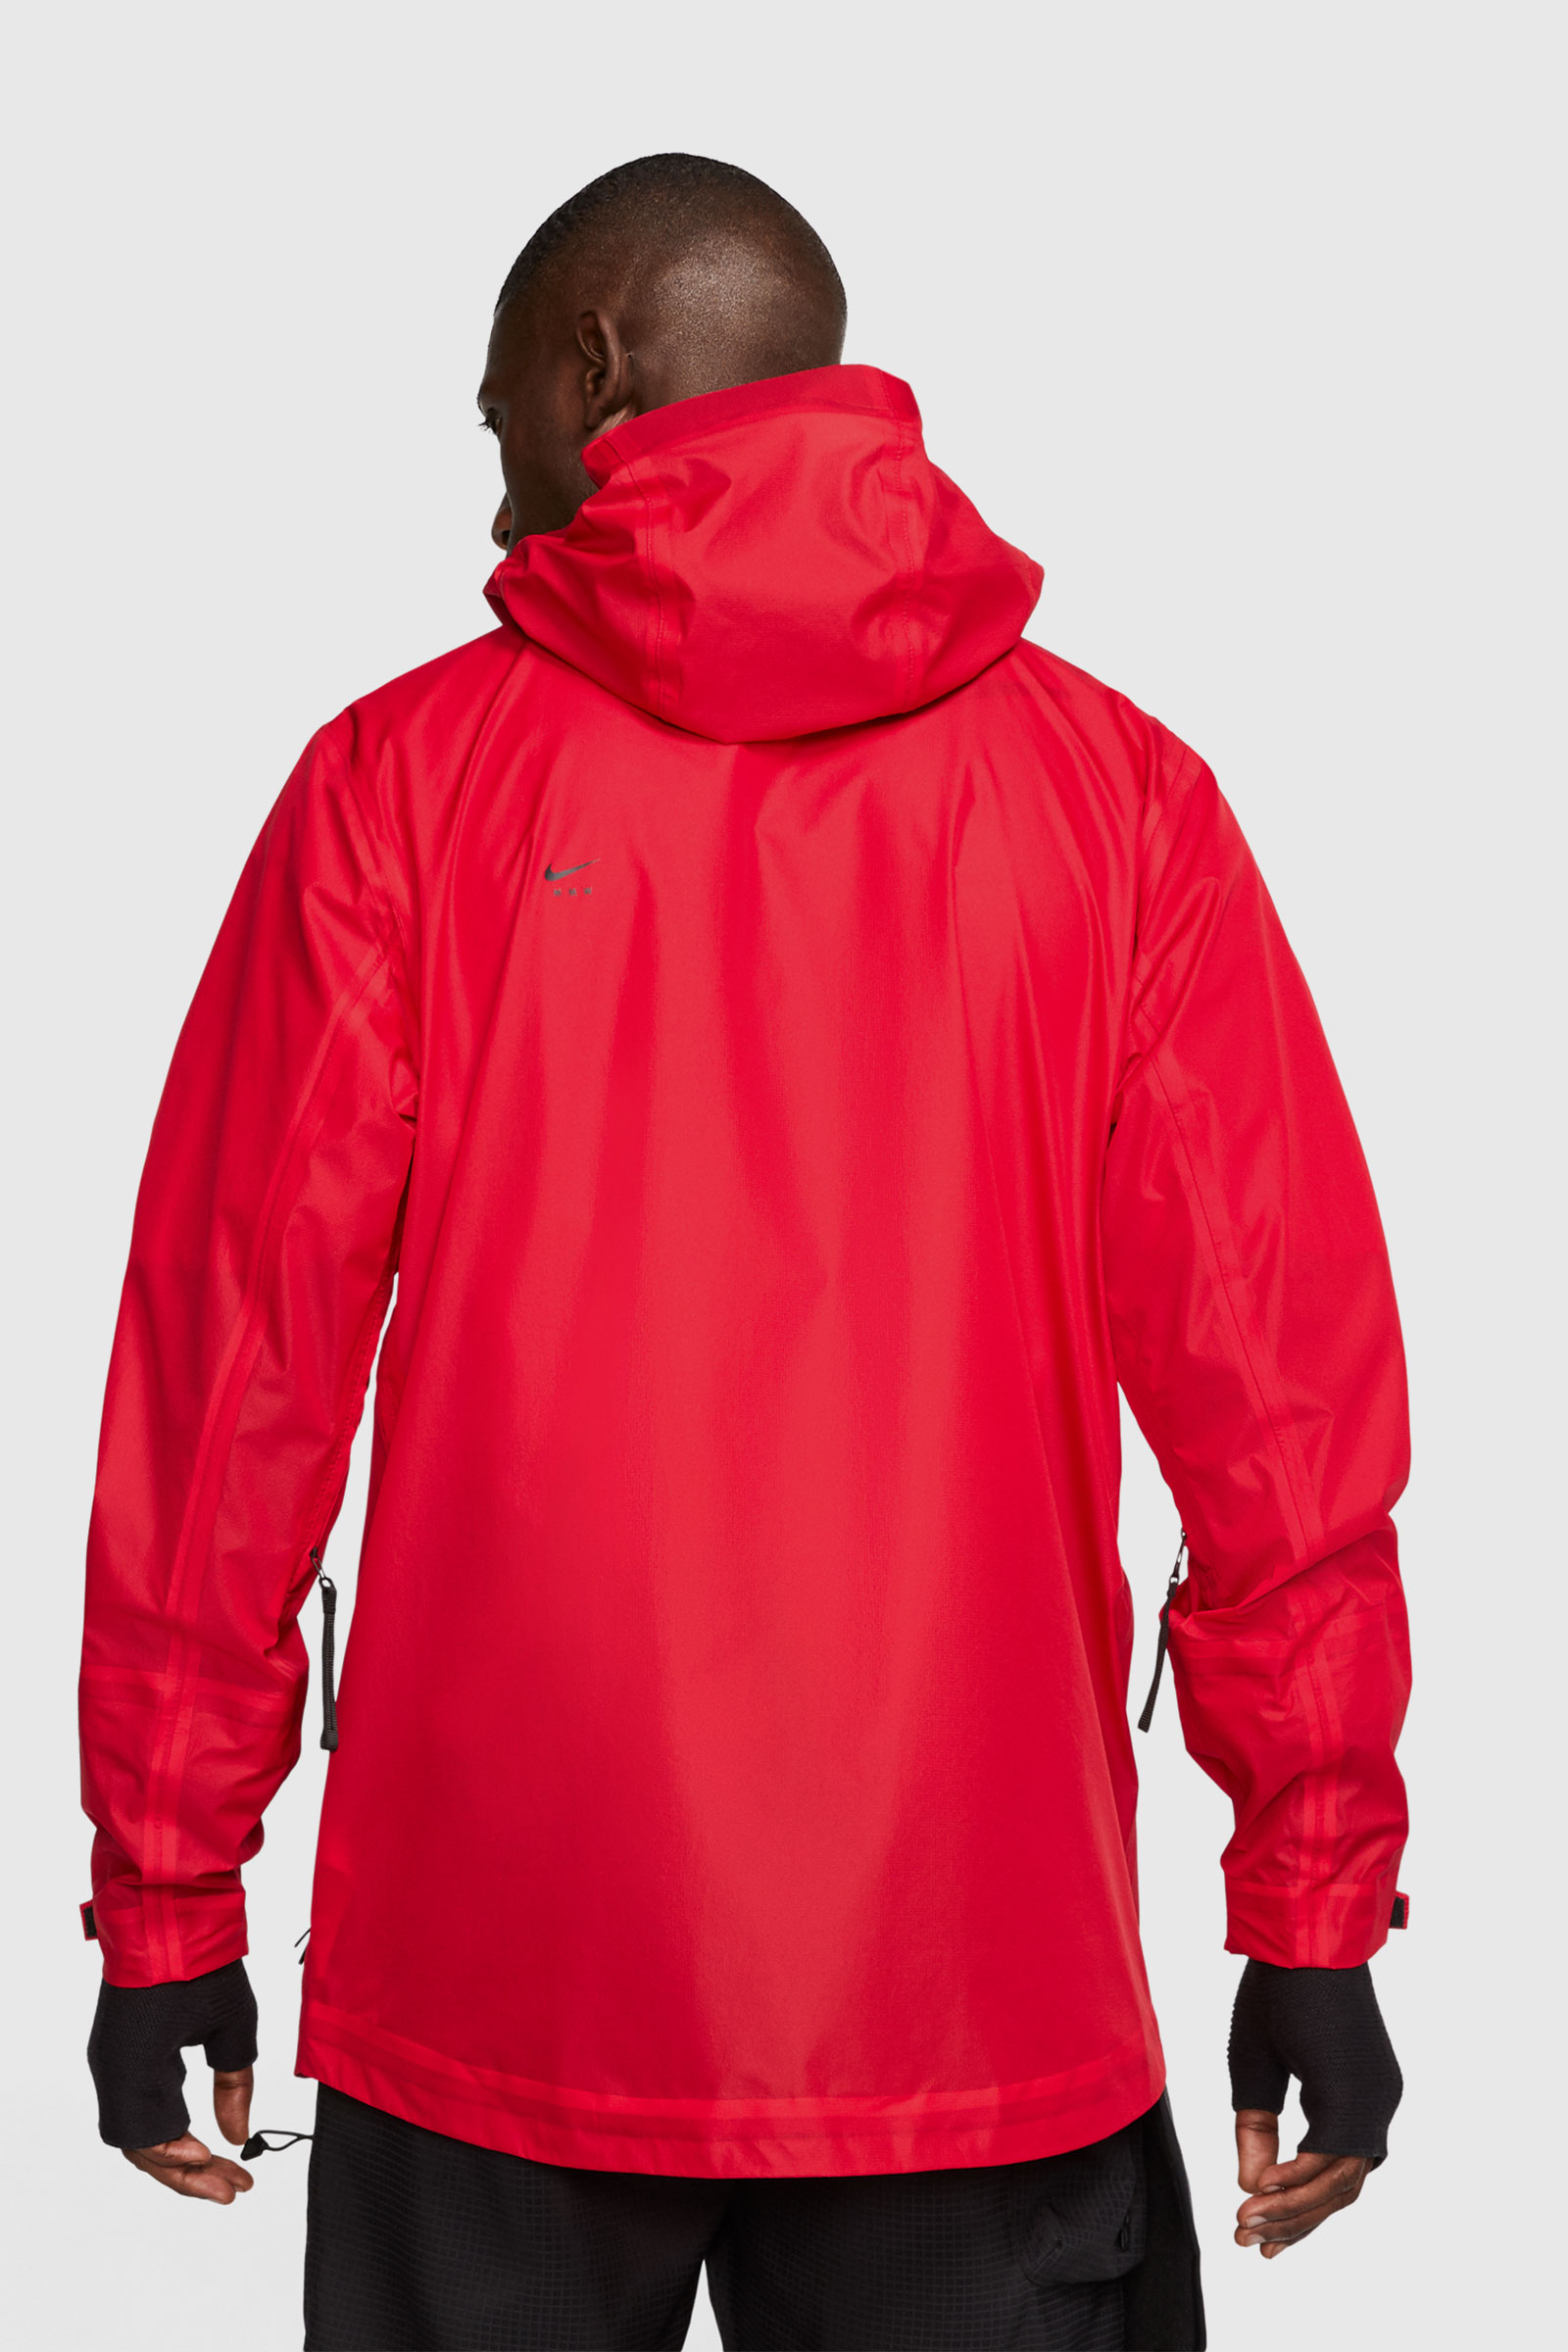 Nike M NRG X SE JACKET University red (657) | WoodWood.com